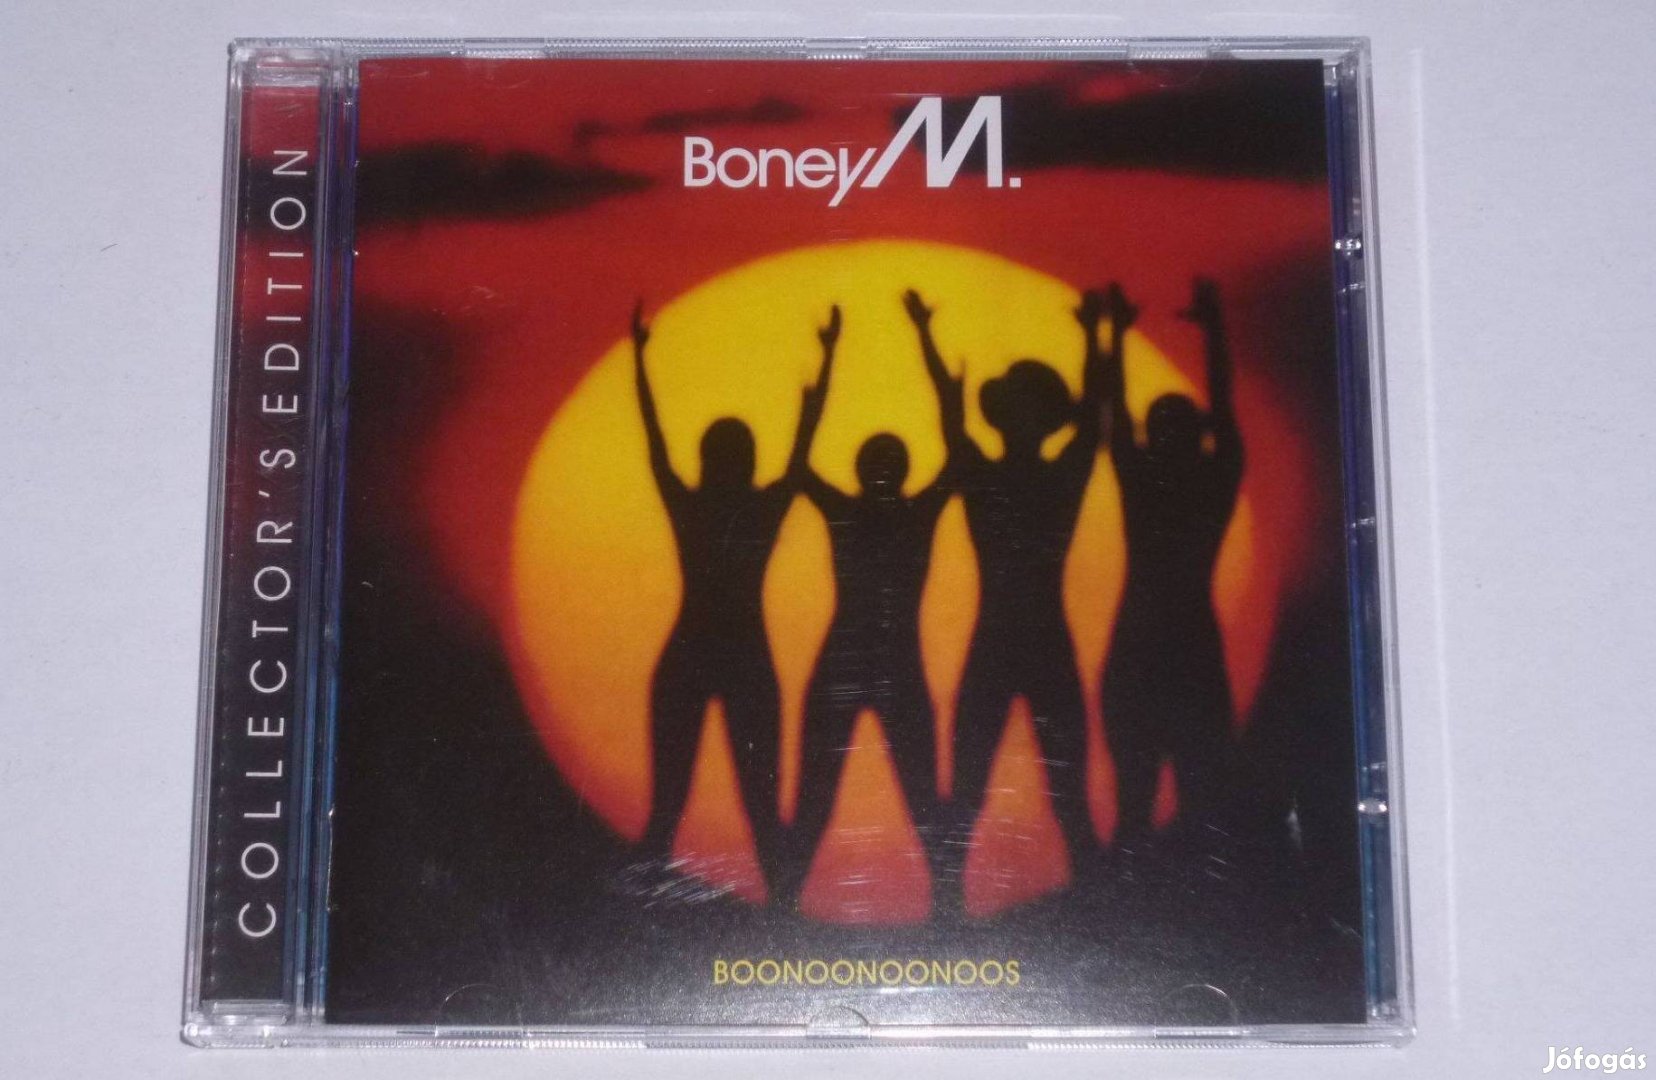 Boney M - Boonoonoonoos 1981 CD Collector's Edition